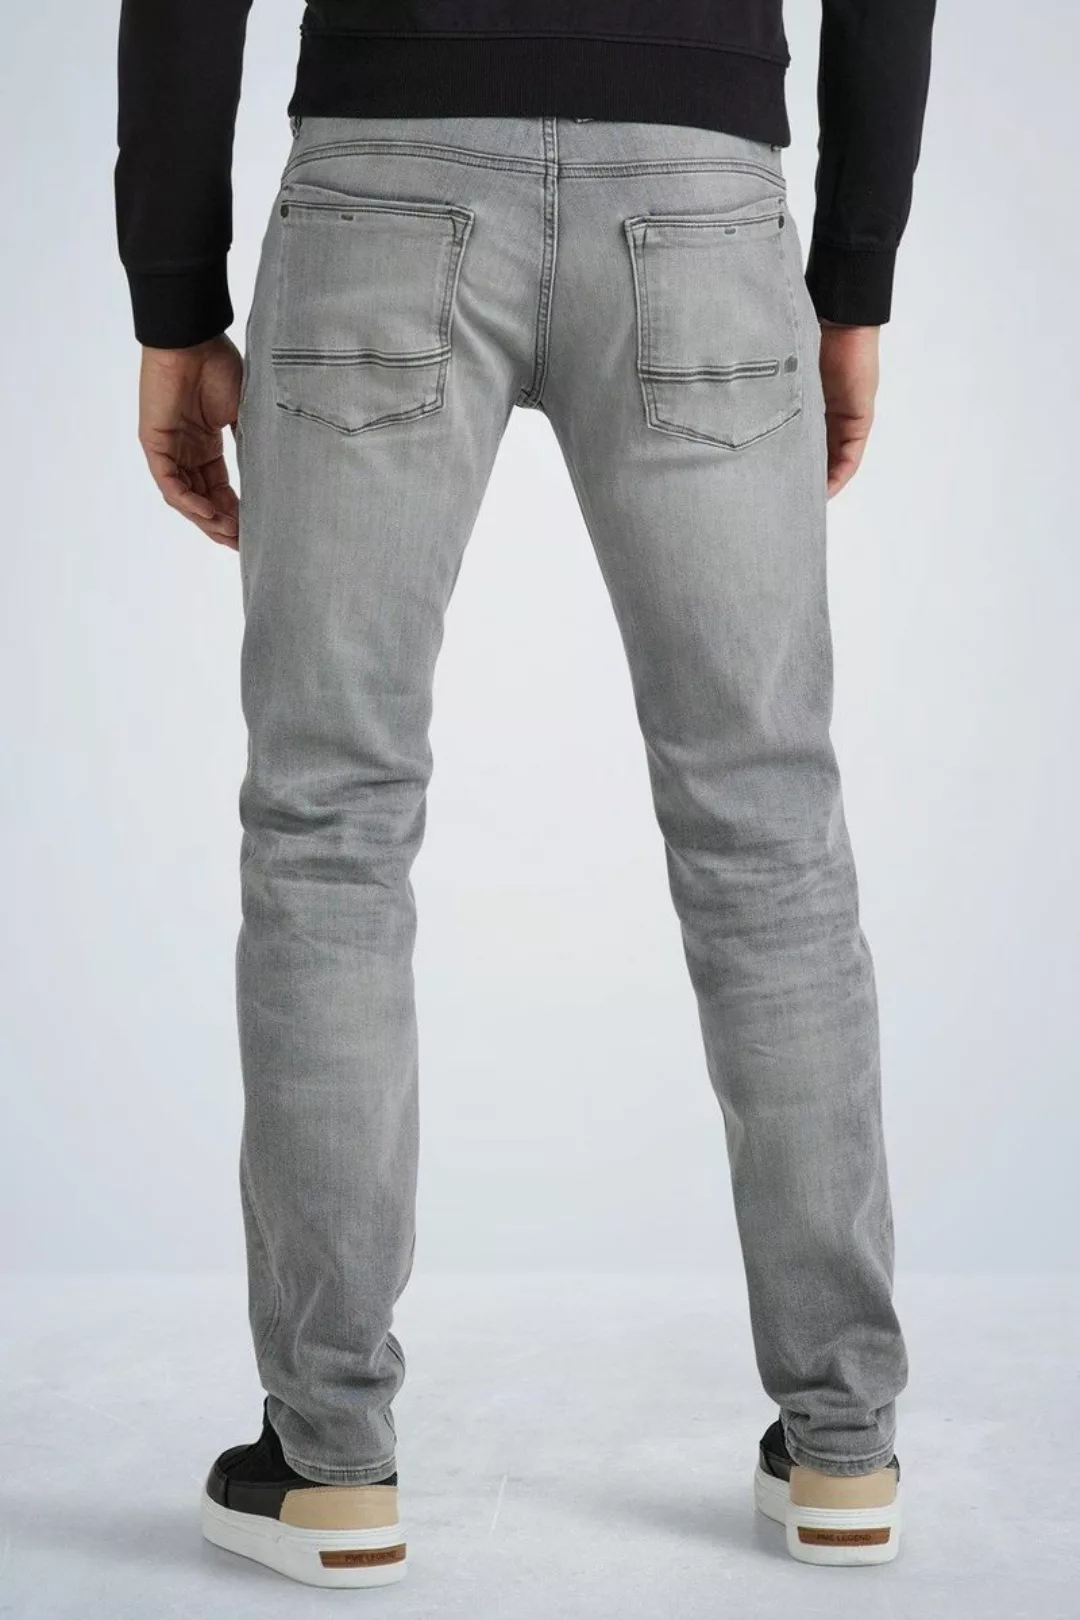 PME Legend Commander 3.0 Jeans Grau - Größe W 30 - L 32 günstig online kaufen